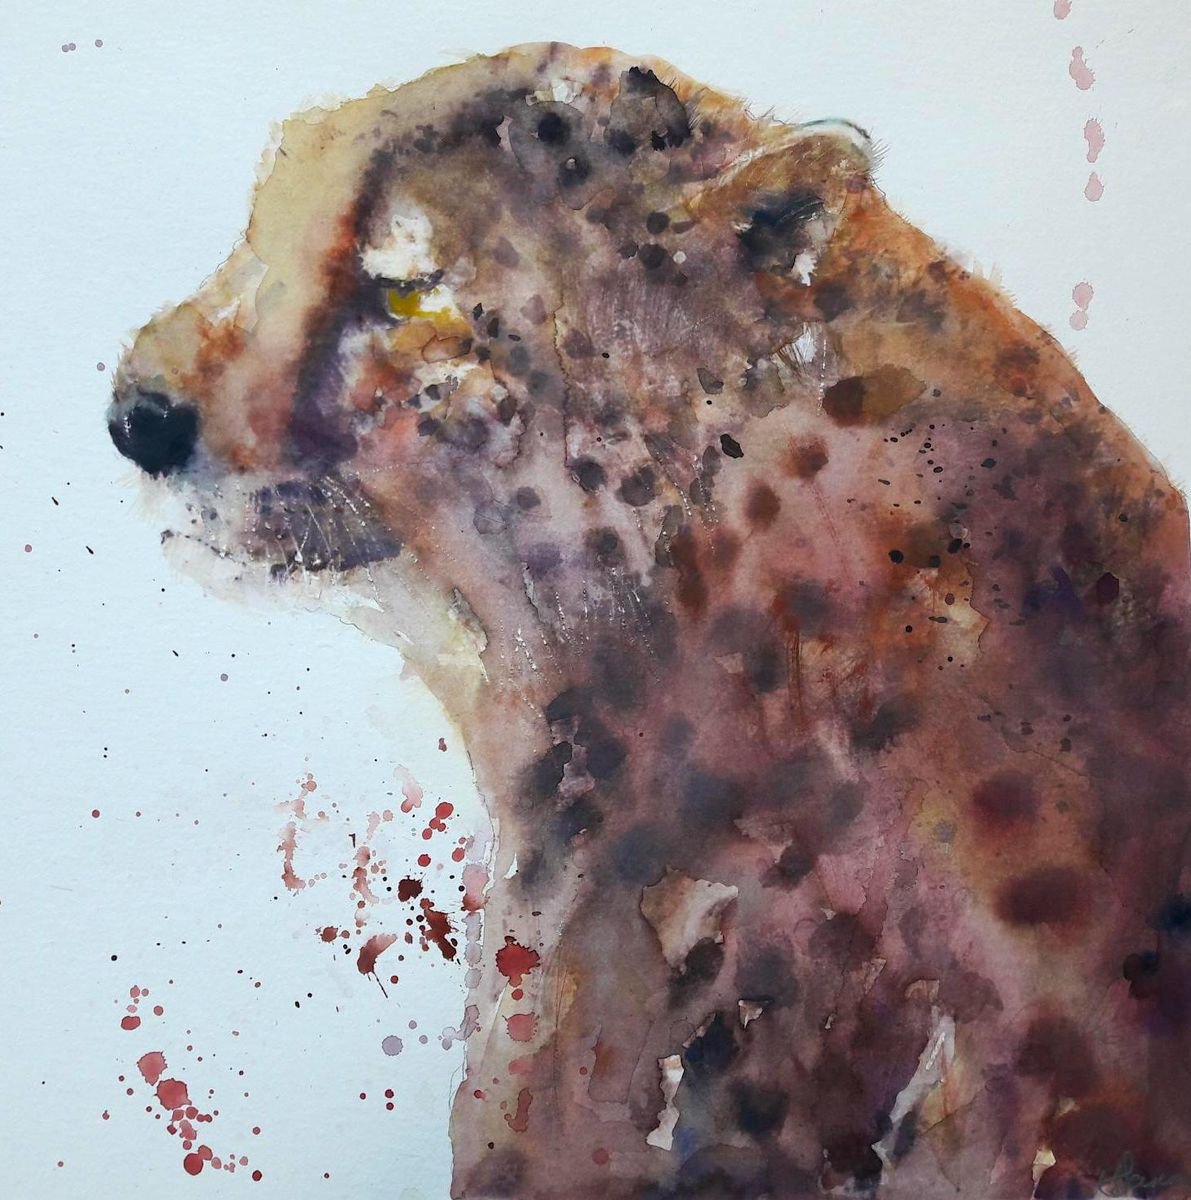 Cheetah by Teresa Tanner